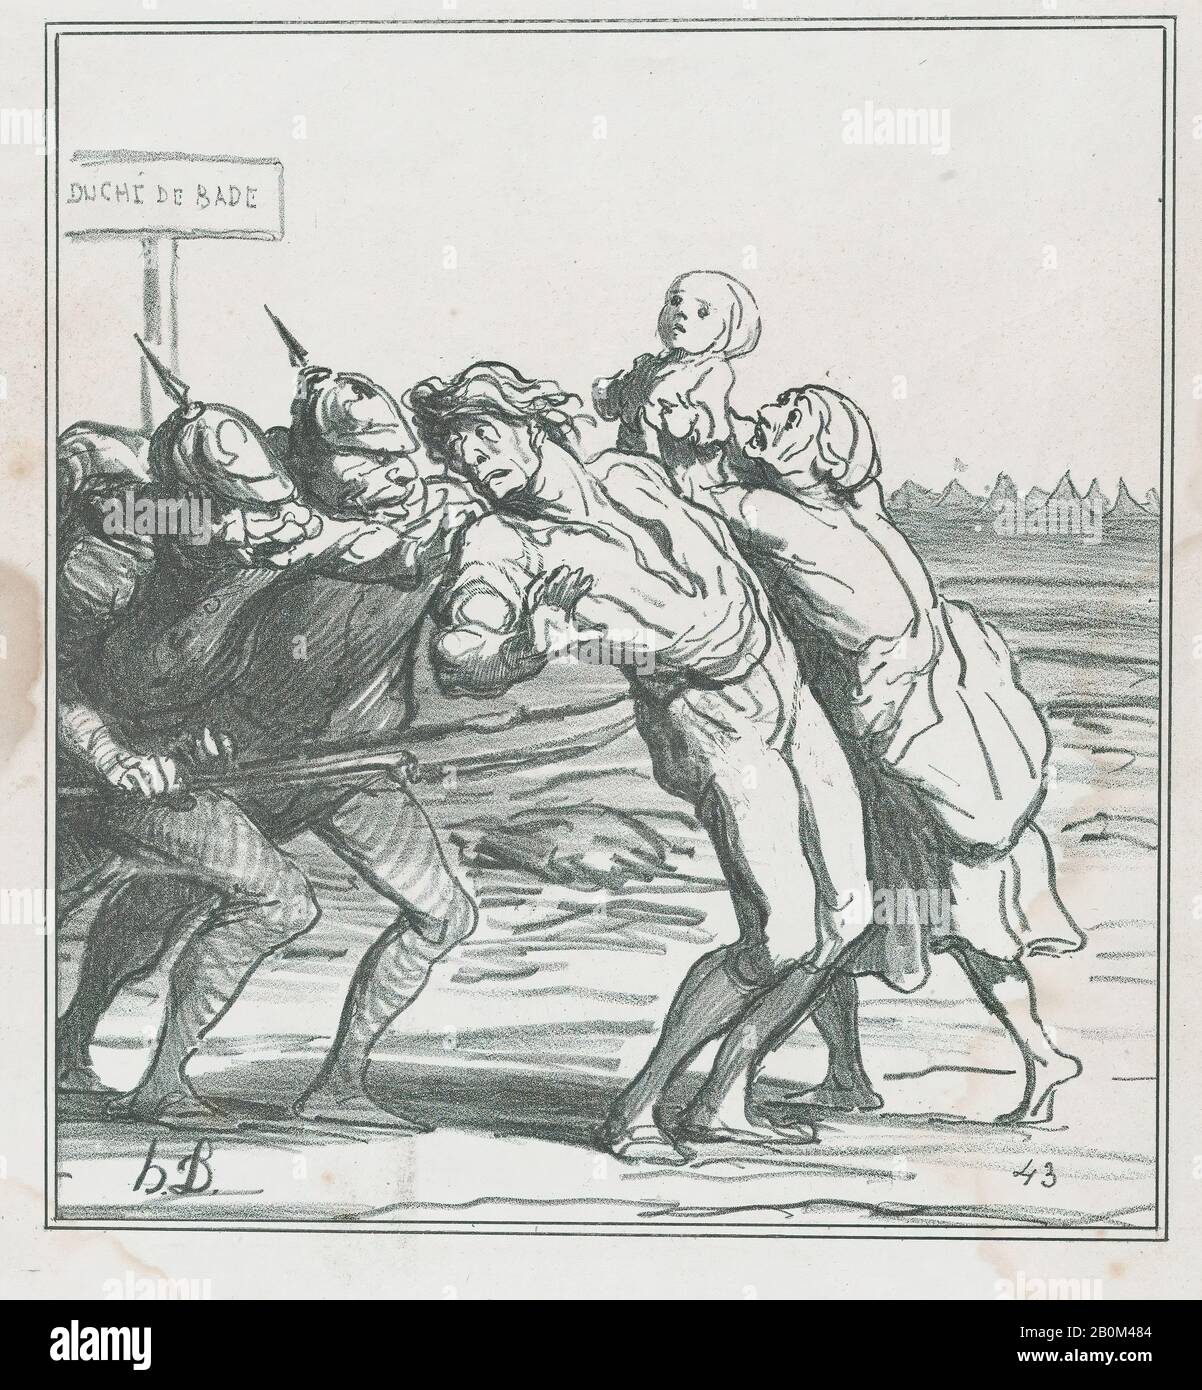 Honoré Daumier, Che Chiama i loro coscritti di riserva ai colori, da 'Notizie del giorno,' pubblicato in le Charivari, 31 agosto 1870, 'Notizie del giorno' (Actualités), Honoré Daumier (francese, Marsiglia 1808–1879 Valmondois), 31 agosto 1870, Lithograph su carta wove; secondo stato di due (immagine Delteil): 9 9/16 × 8 3/4 in. (24,3 × 22,3 cm), foglio: 13 3/16 × 10 11/16 in. (33,5 × 27,1 cm), stampe Foto Stock